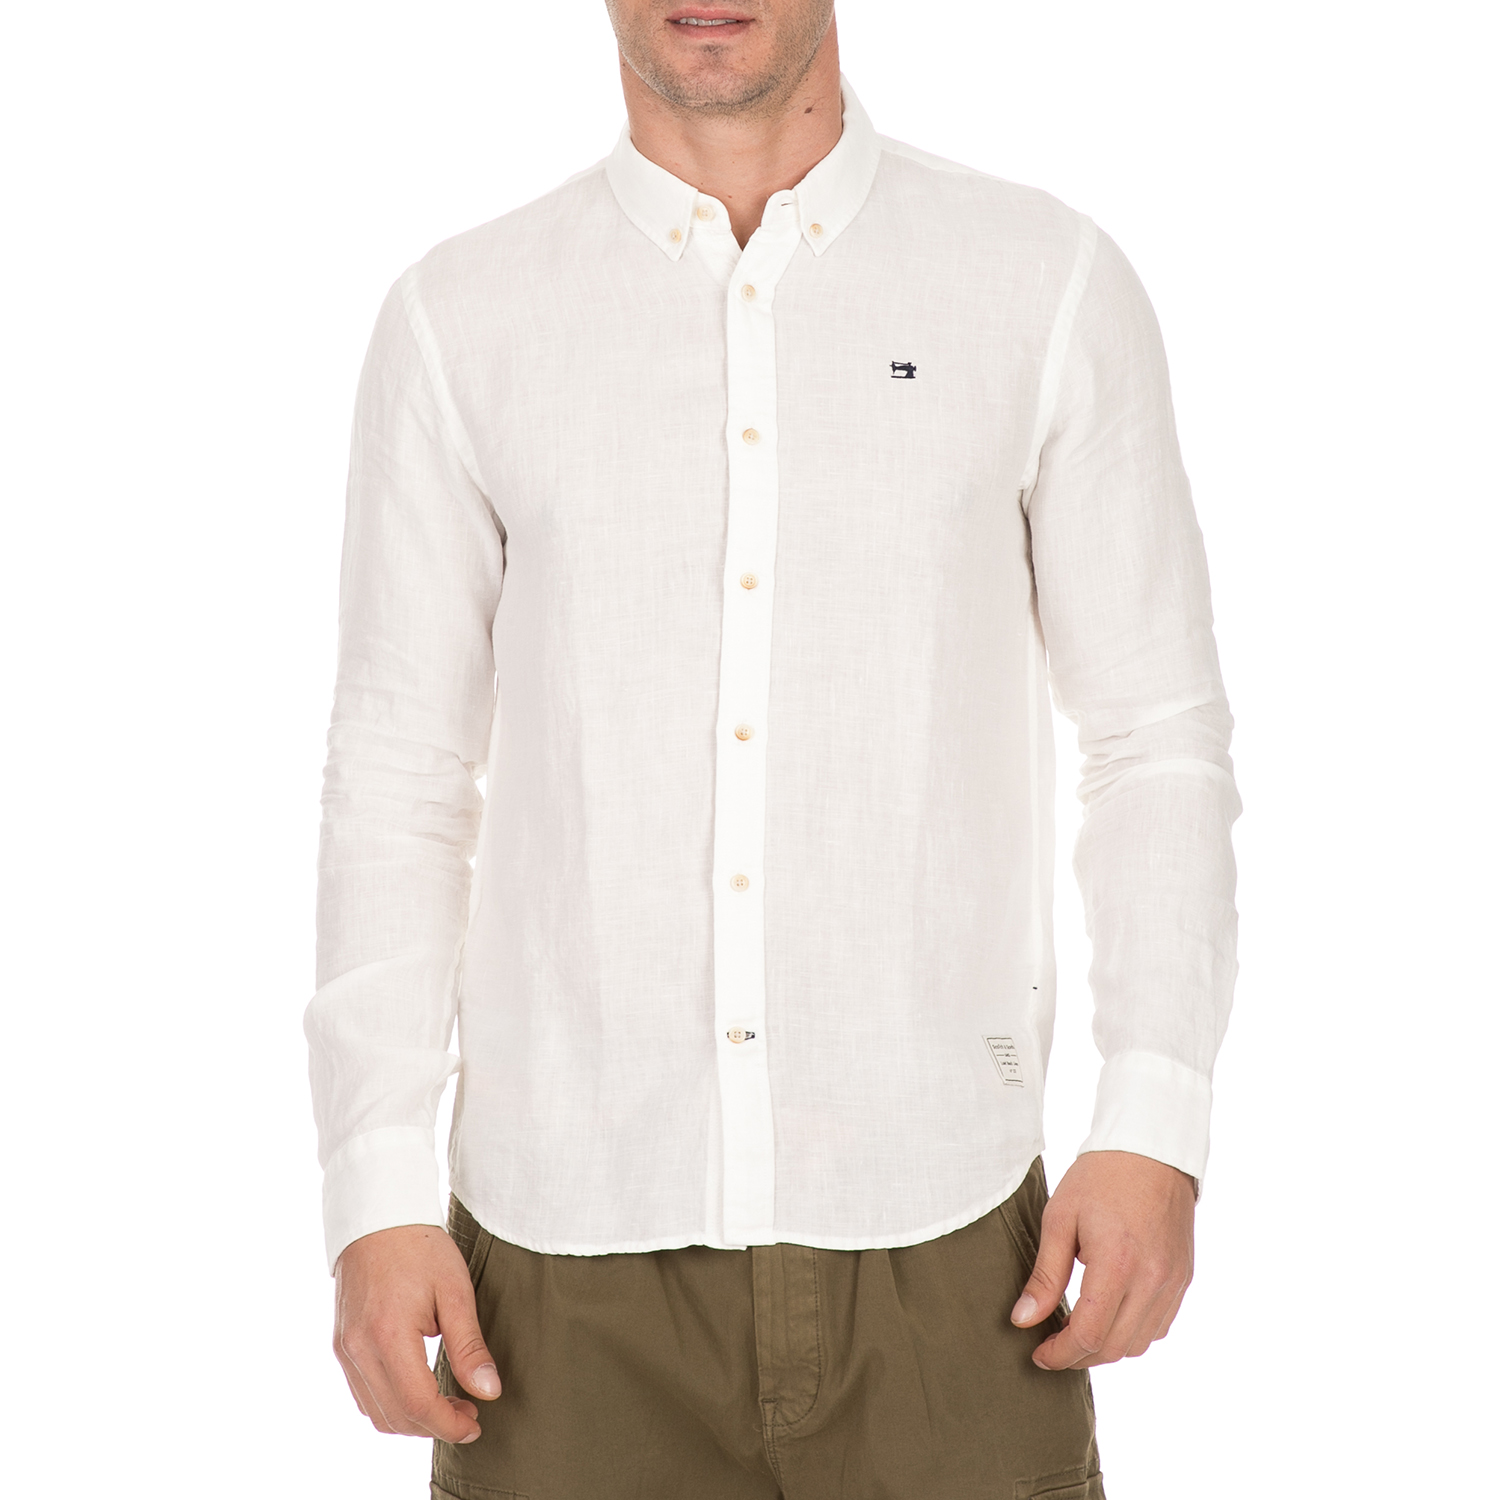 Ανδρικά/Ρούχα/Πουκάμισα/Μακρυμάνικα SCOTCH & SODA - Ανδρικό λινό πουκάμισο SCOTCH & SODA λευκό